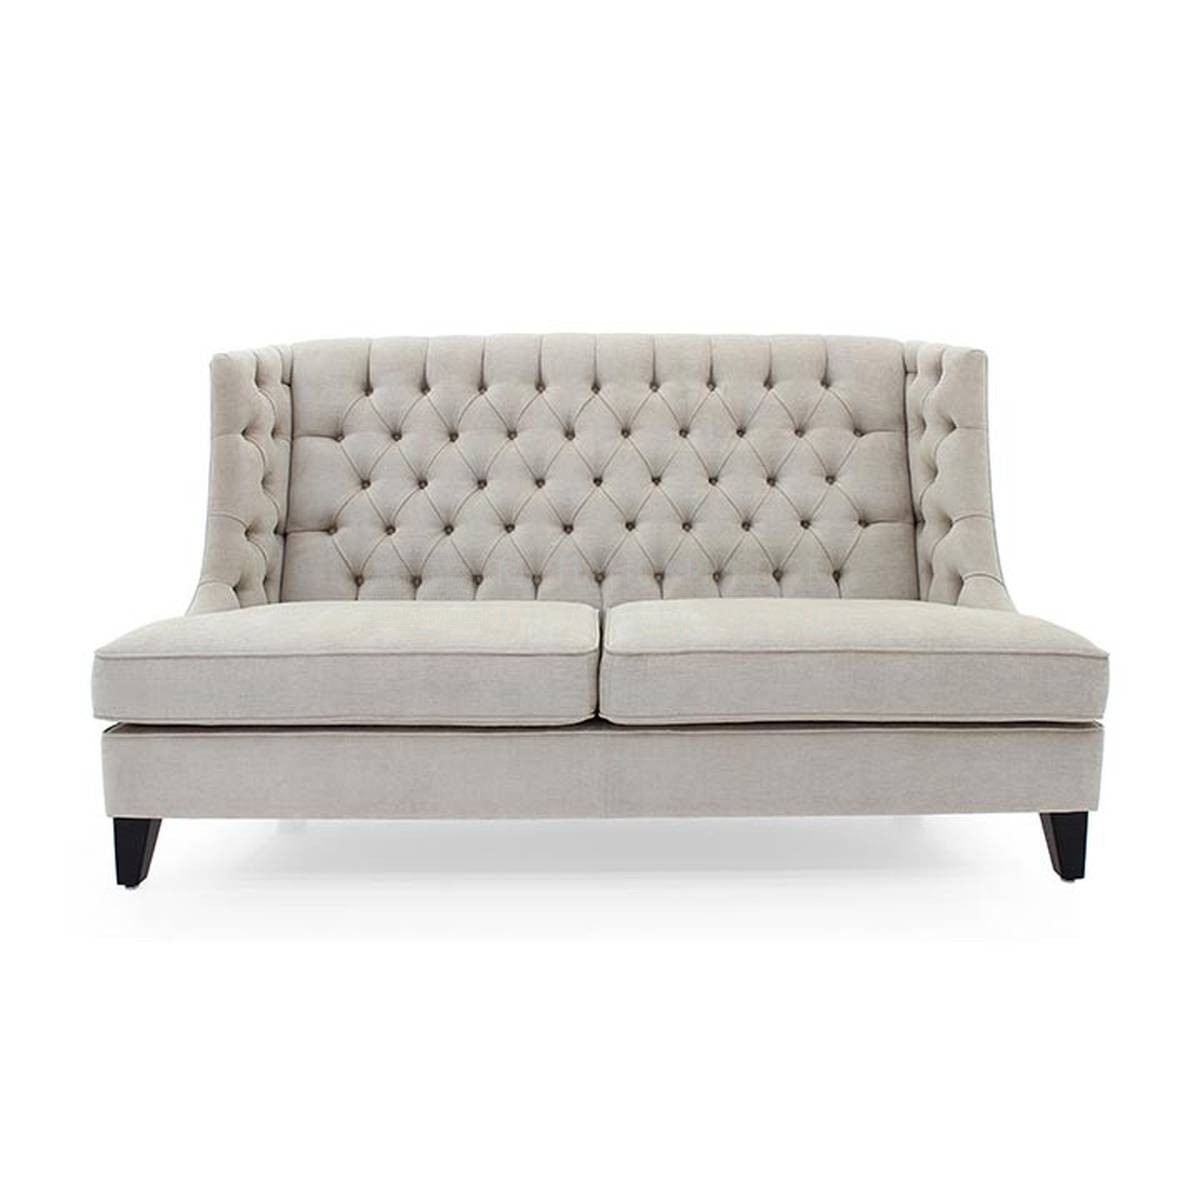 Прямой диван Fortuna из Италии фабрики SEVEN SEDIE